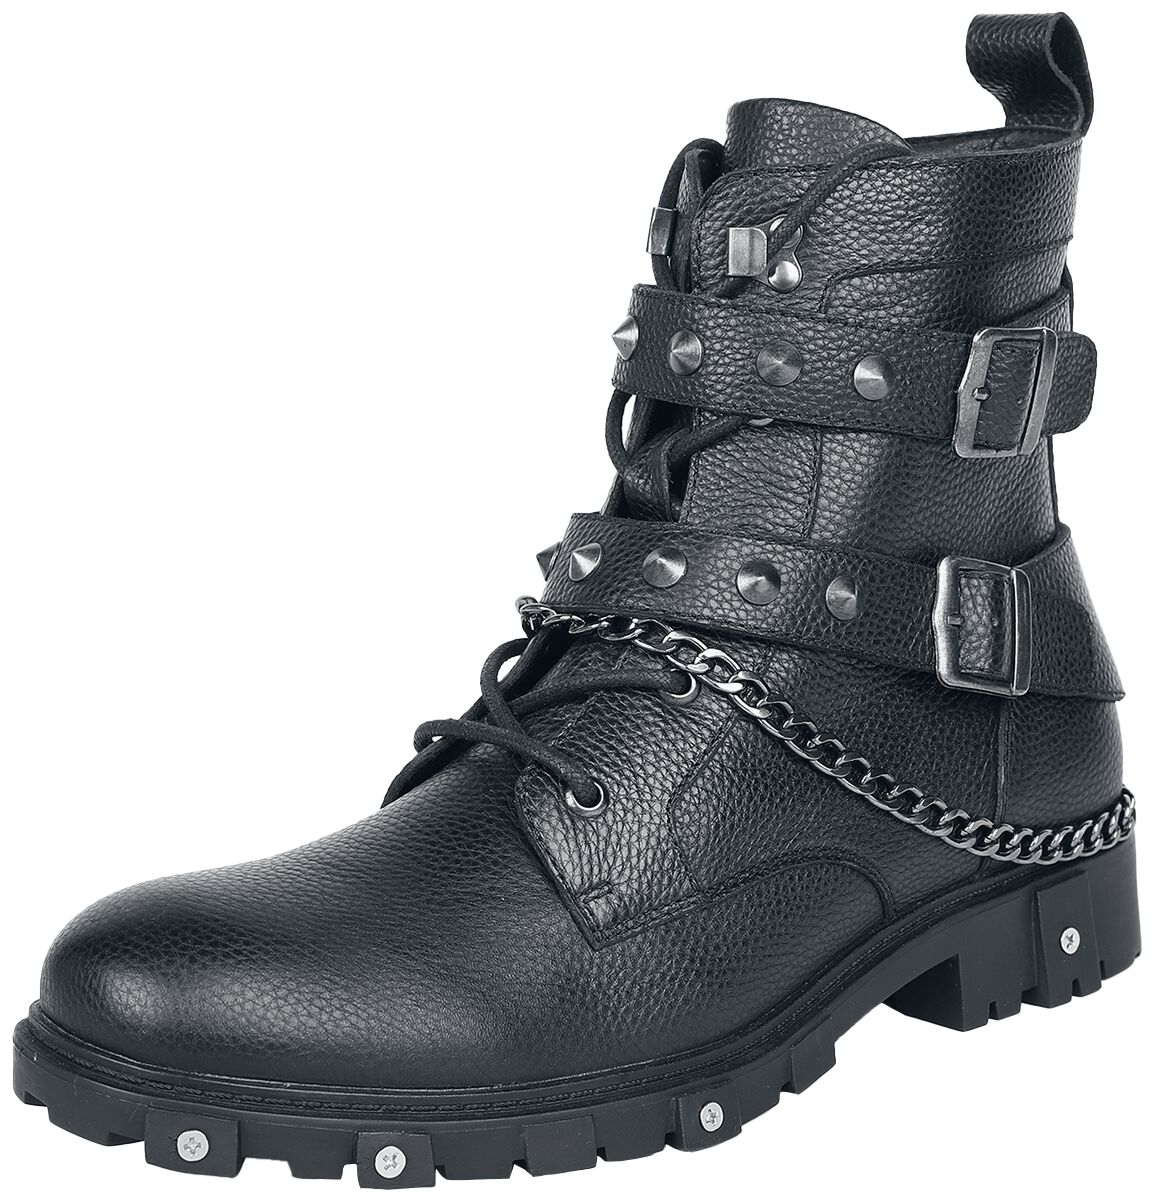 Gothicana by EMP - Gothic Stiefel - Boots with Chains and Buckles - EU41 - für Männer - Größe EU41 - schwarz